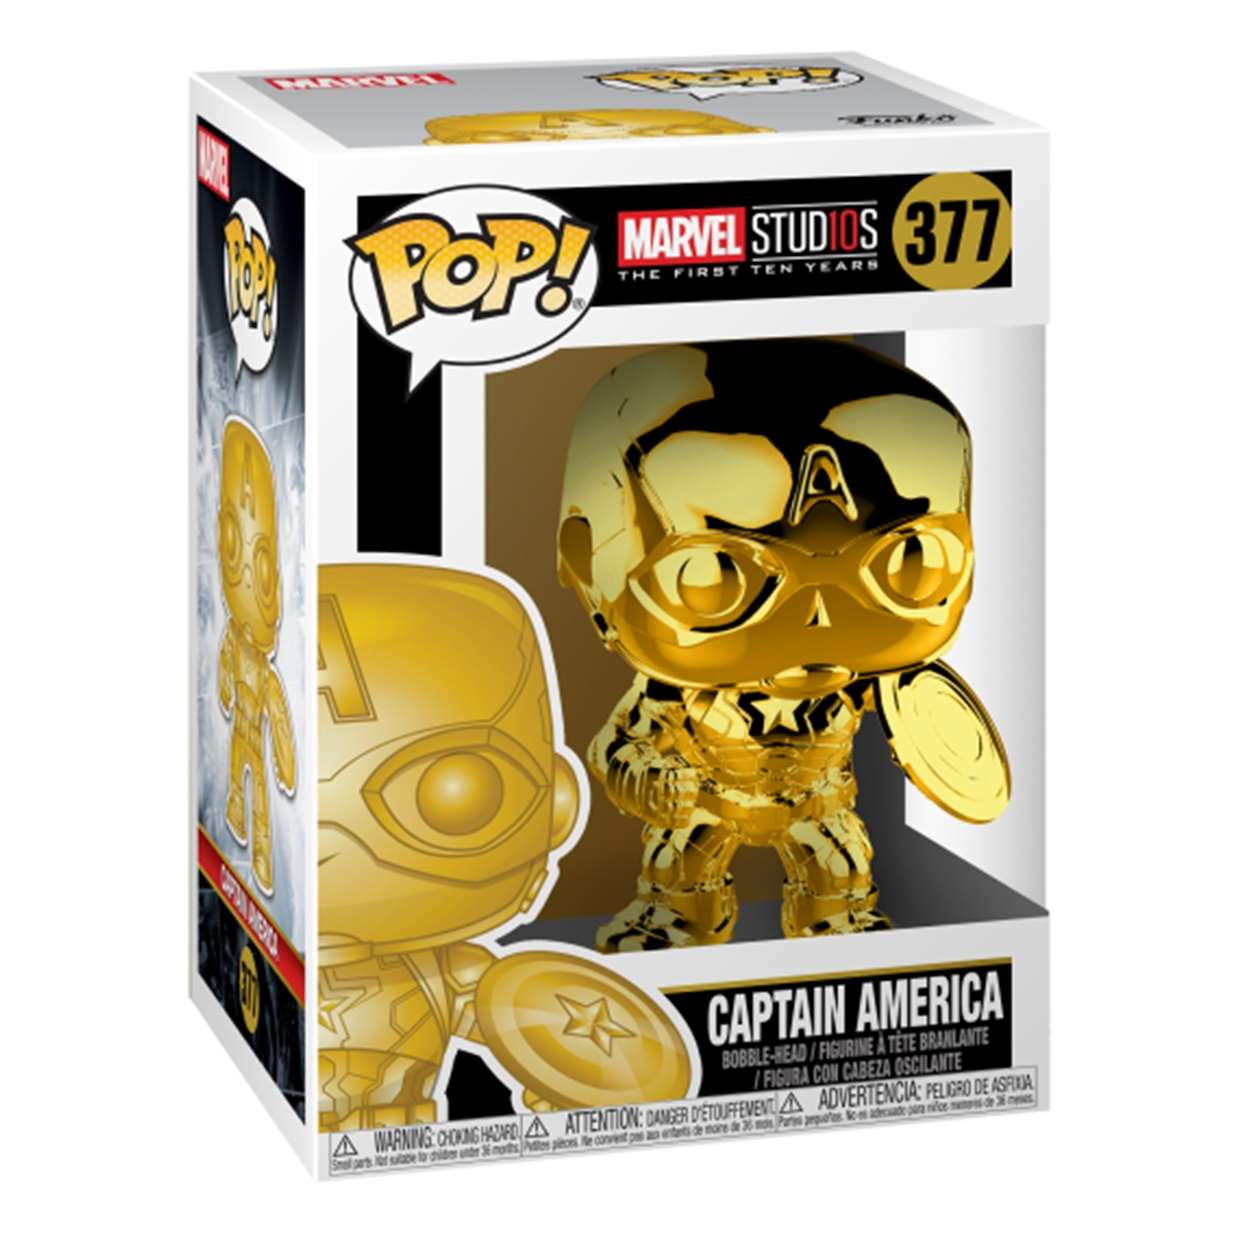 Capitán América #377 Chrome Funko Pop! Marvel Studio's 10th